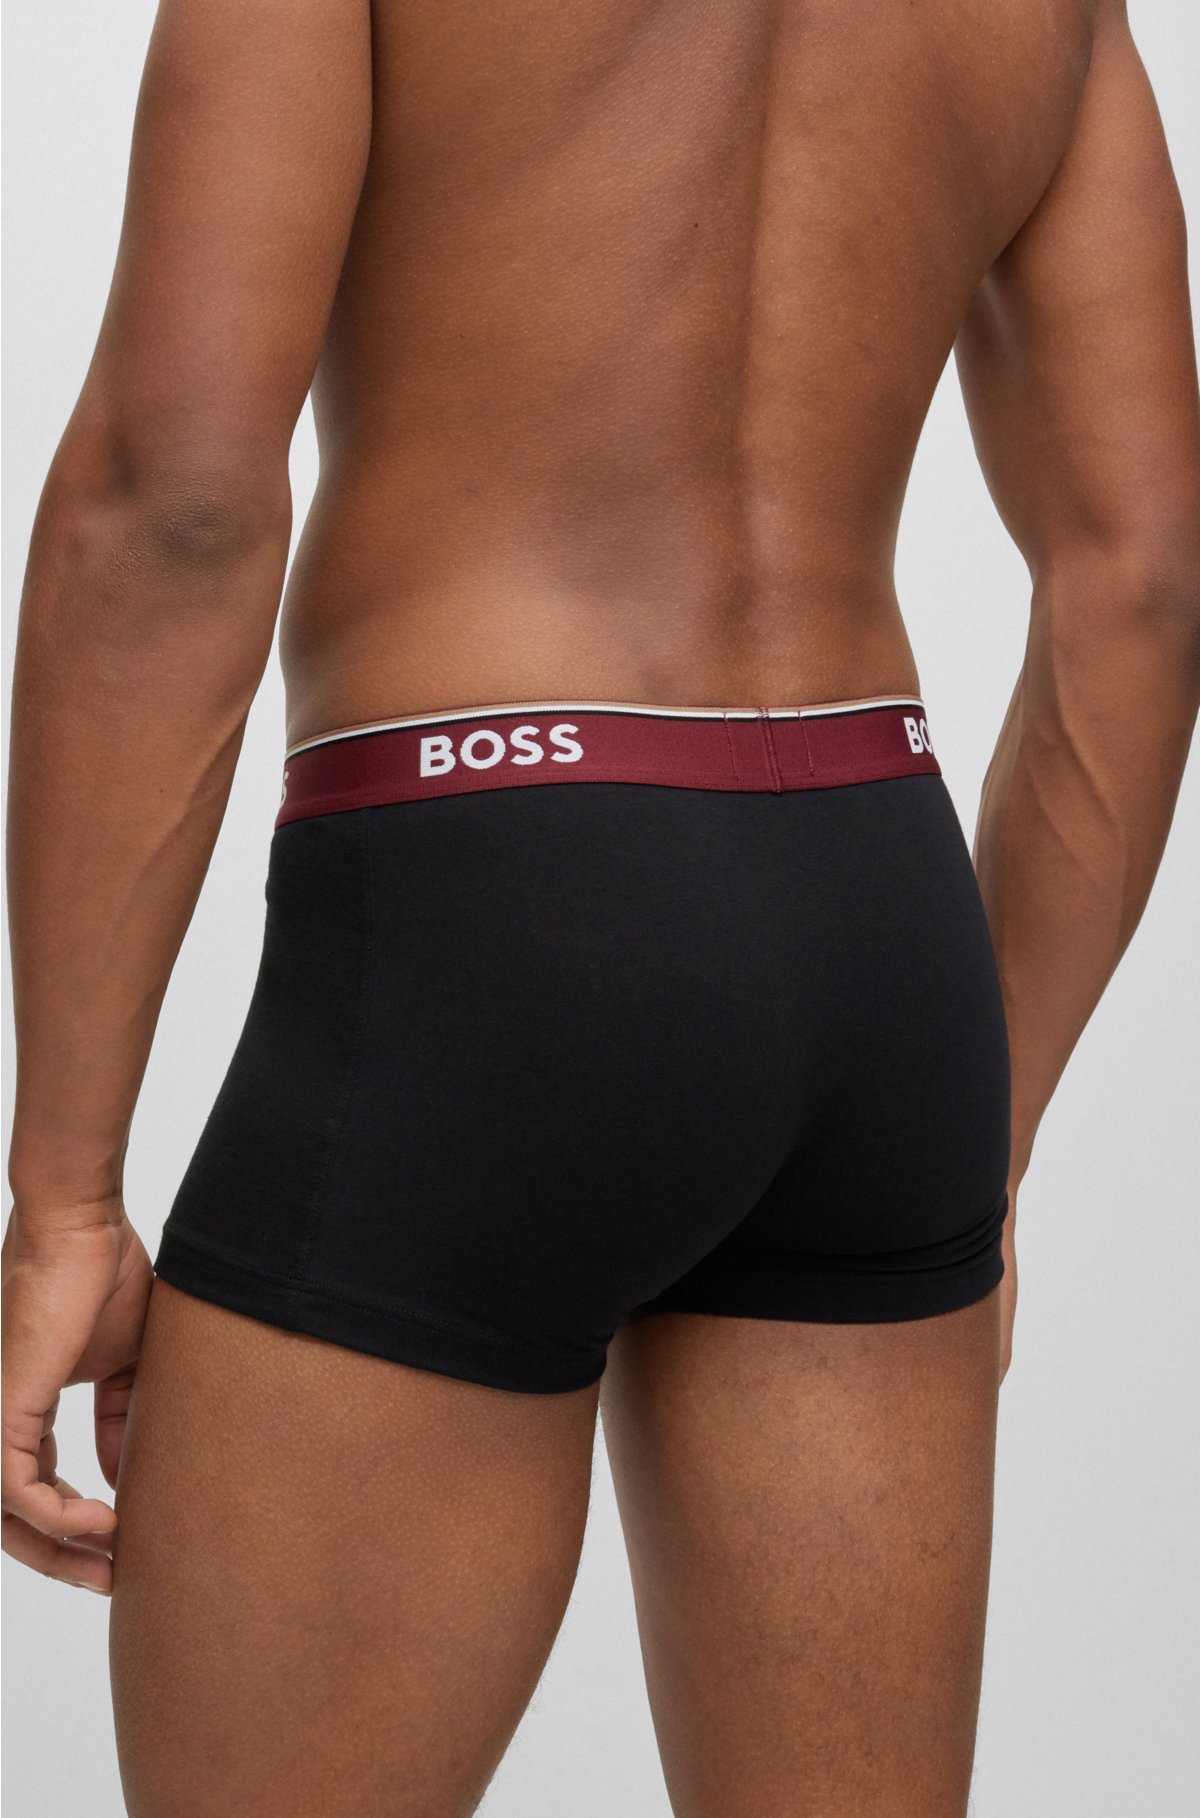 Hugo Boss - Paquete de 3 calzoncillos de algodón para hombre